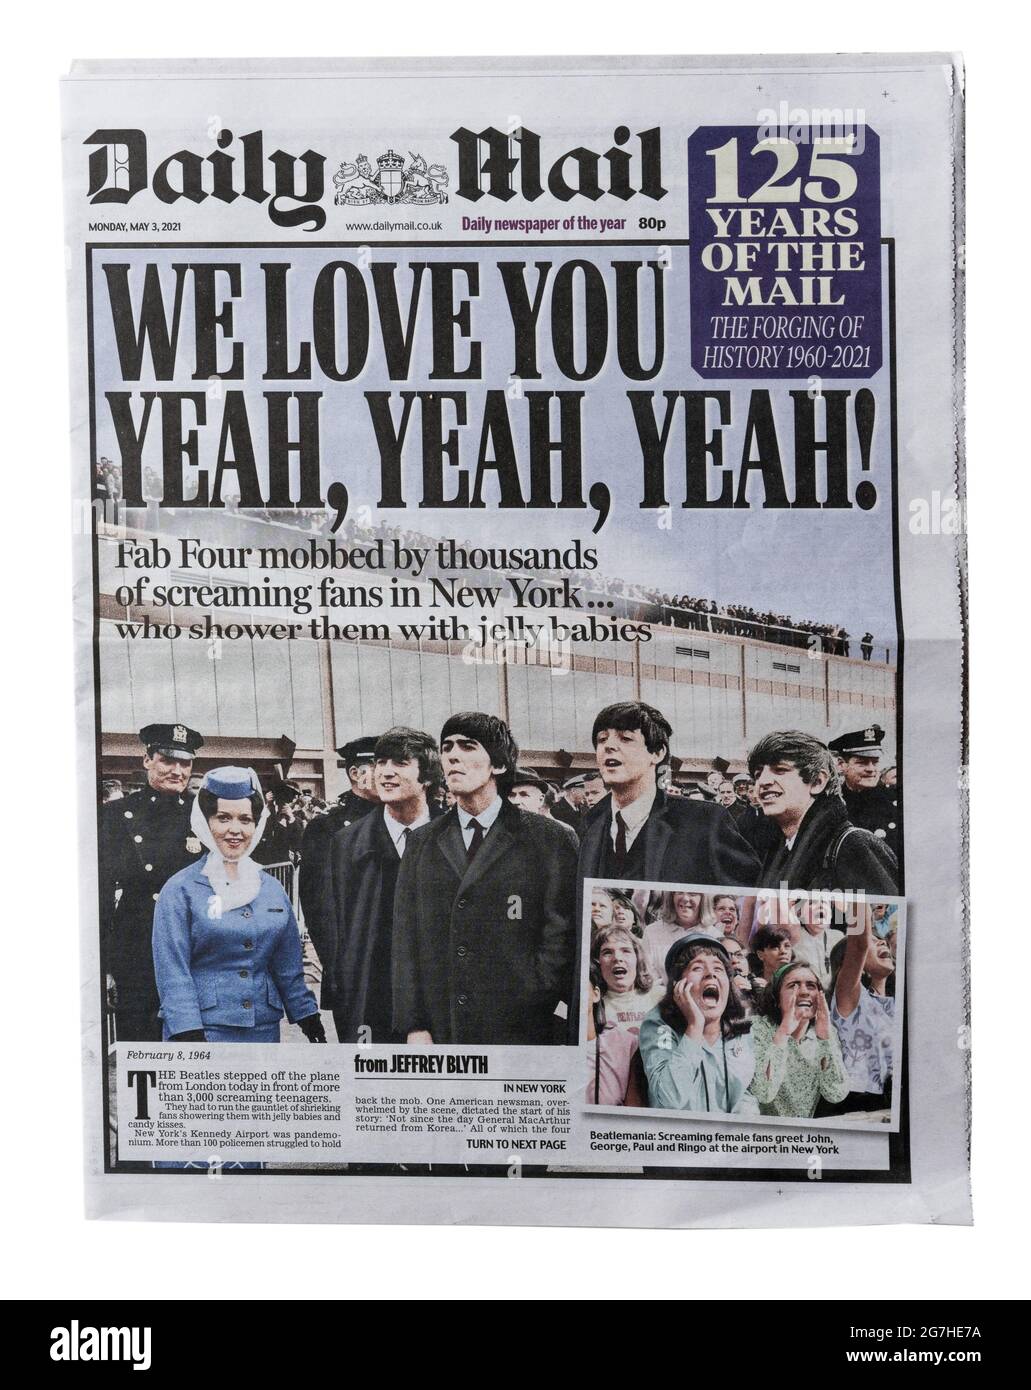 Eine historische Reproduktion Titelseite der Daily Mail mit der Überschrift We Love You Yeah Yeah Yeah, über die Beatles in New York Stockfoto